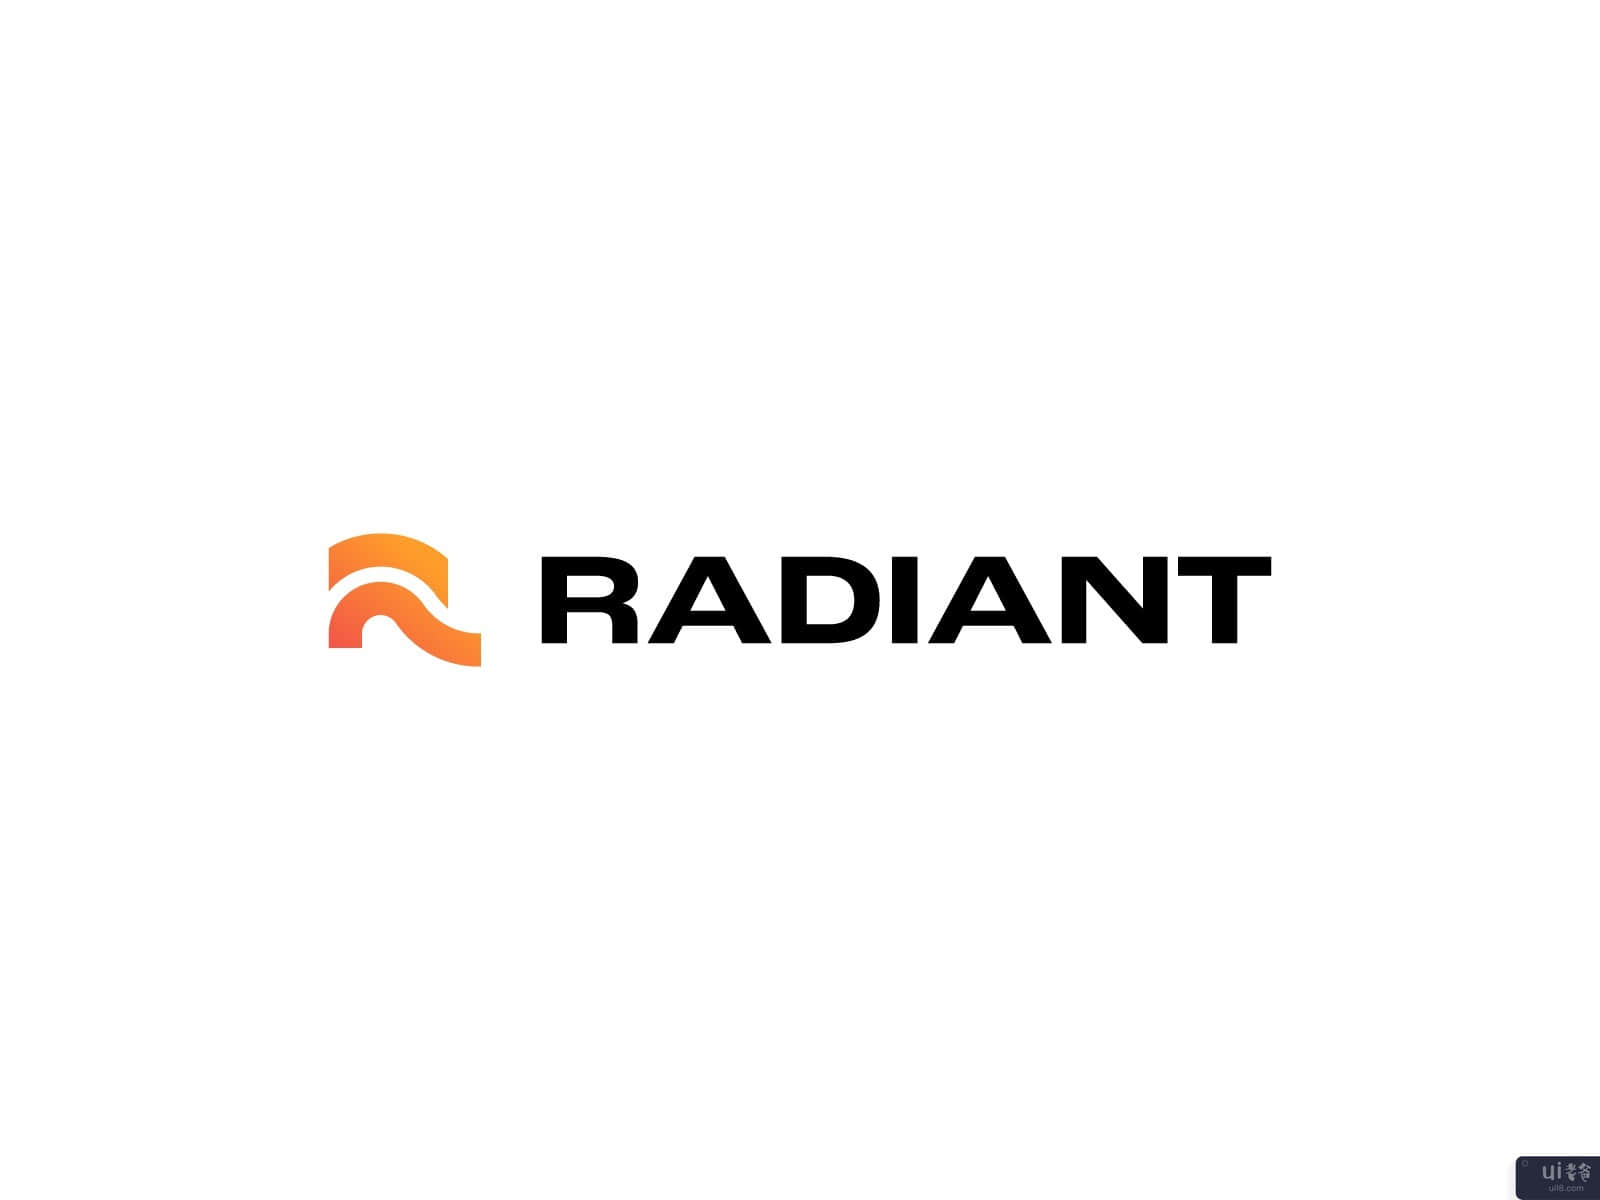 辐射 - 品牌识别(Radiant - Brand Identity)插图1